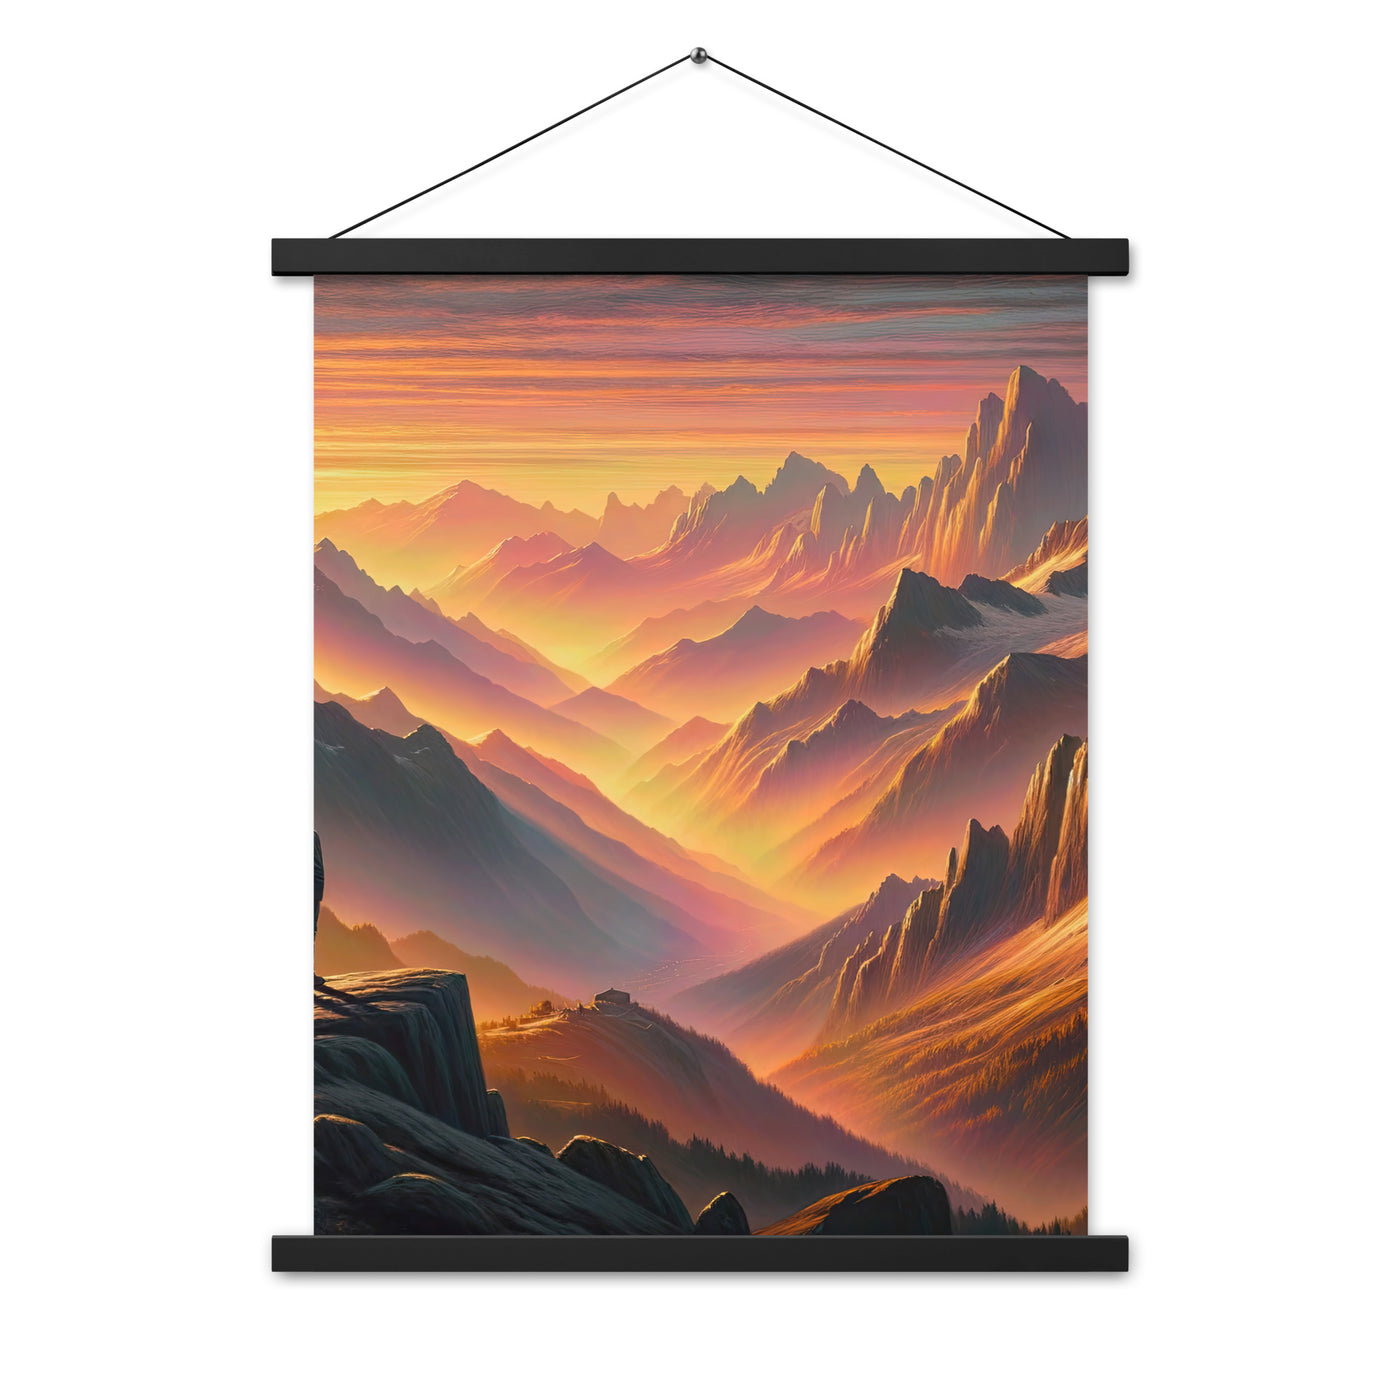 Ölgemälde der Alpen in der goldenen Stunde mit Wanderer, Orange-Rosa Bergpanorama - Premium Poster mit Aufhängung wandern xxx yyy zzz 45.7 x 61 cm